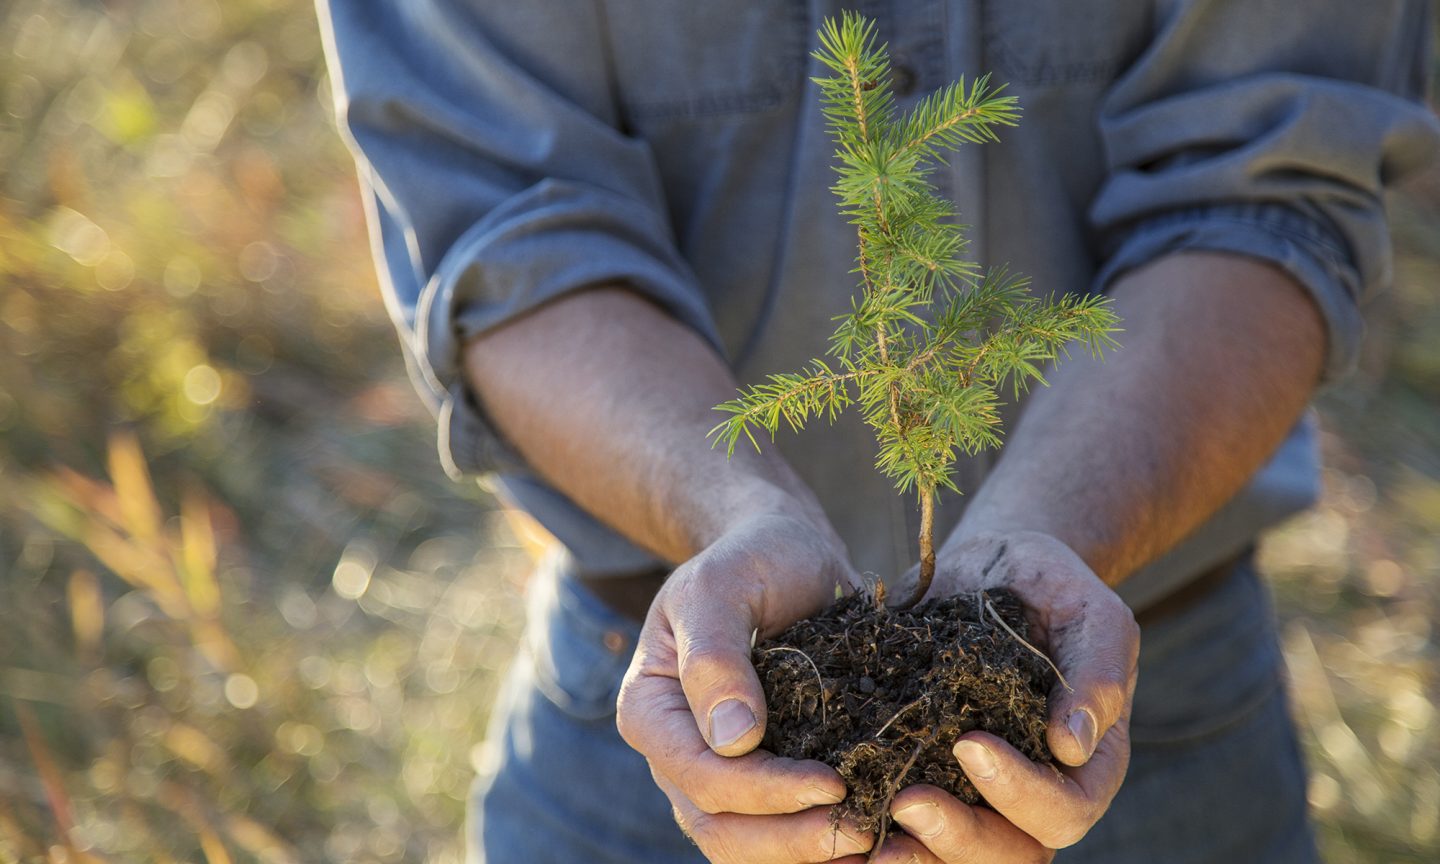 زراعة الأشجار في الأماكن الخطأ قد يزيد من الاحتباس الحراري